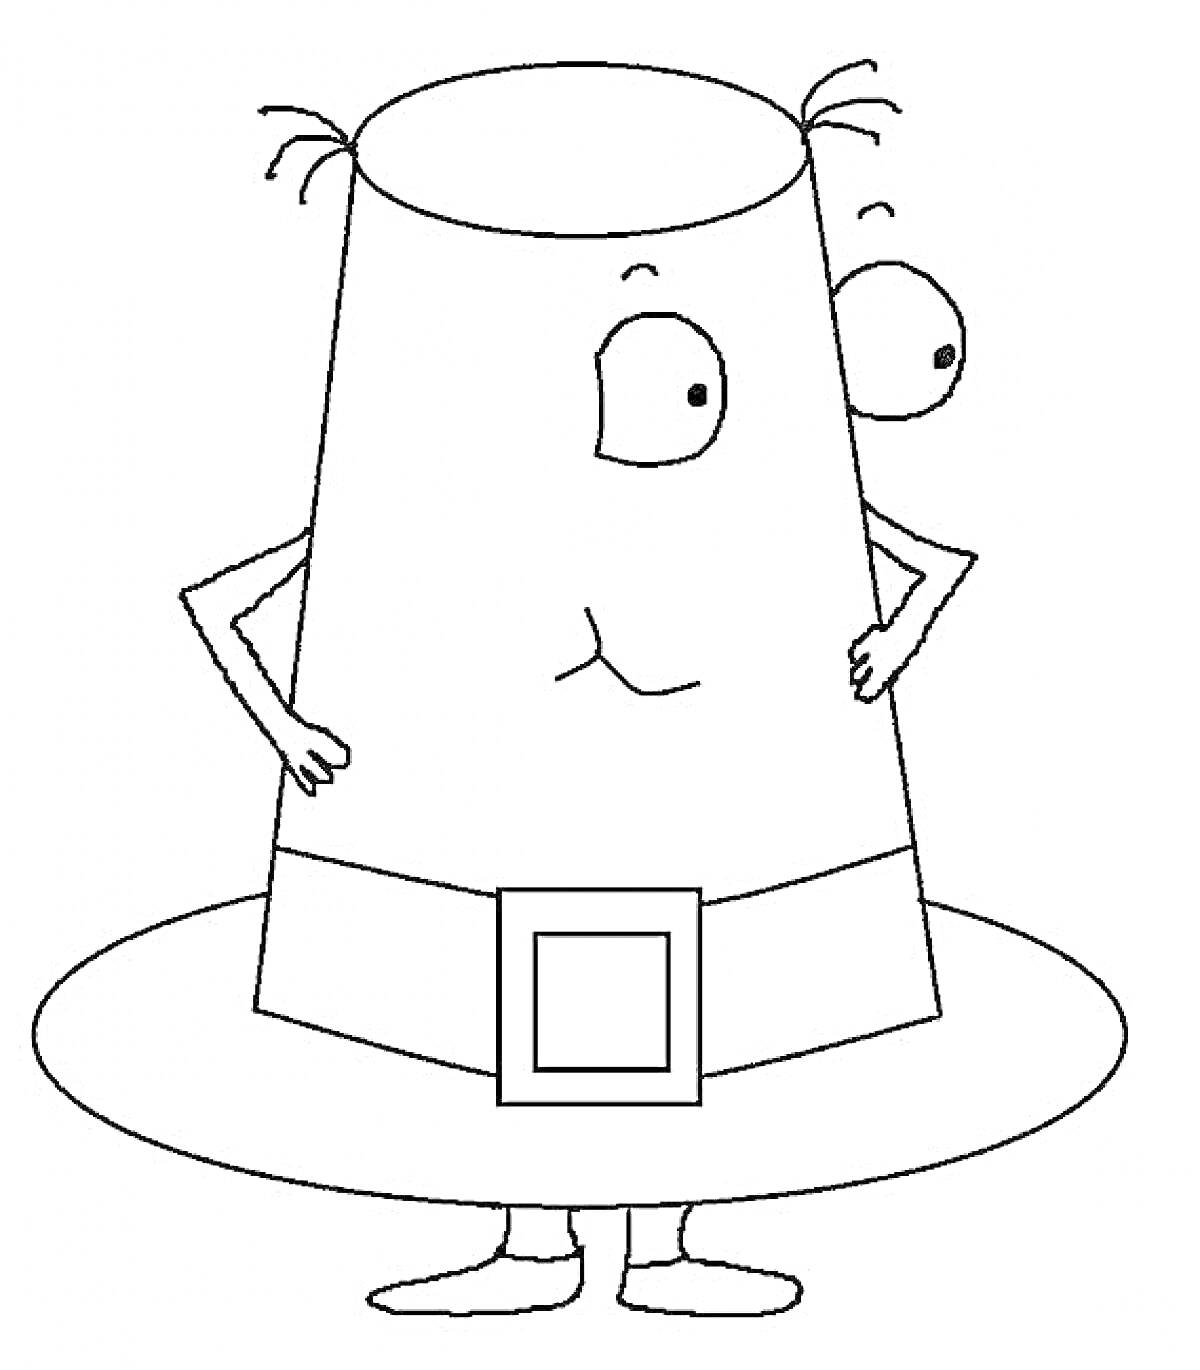 Раскраска Шапка в виде человечка с глазами, руками и ногами, с пряжкой на шляпе